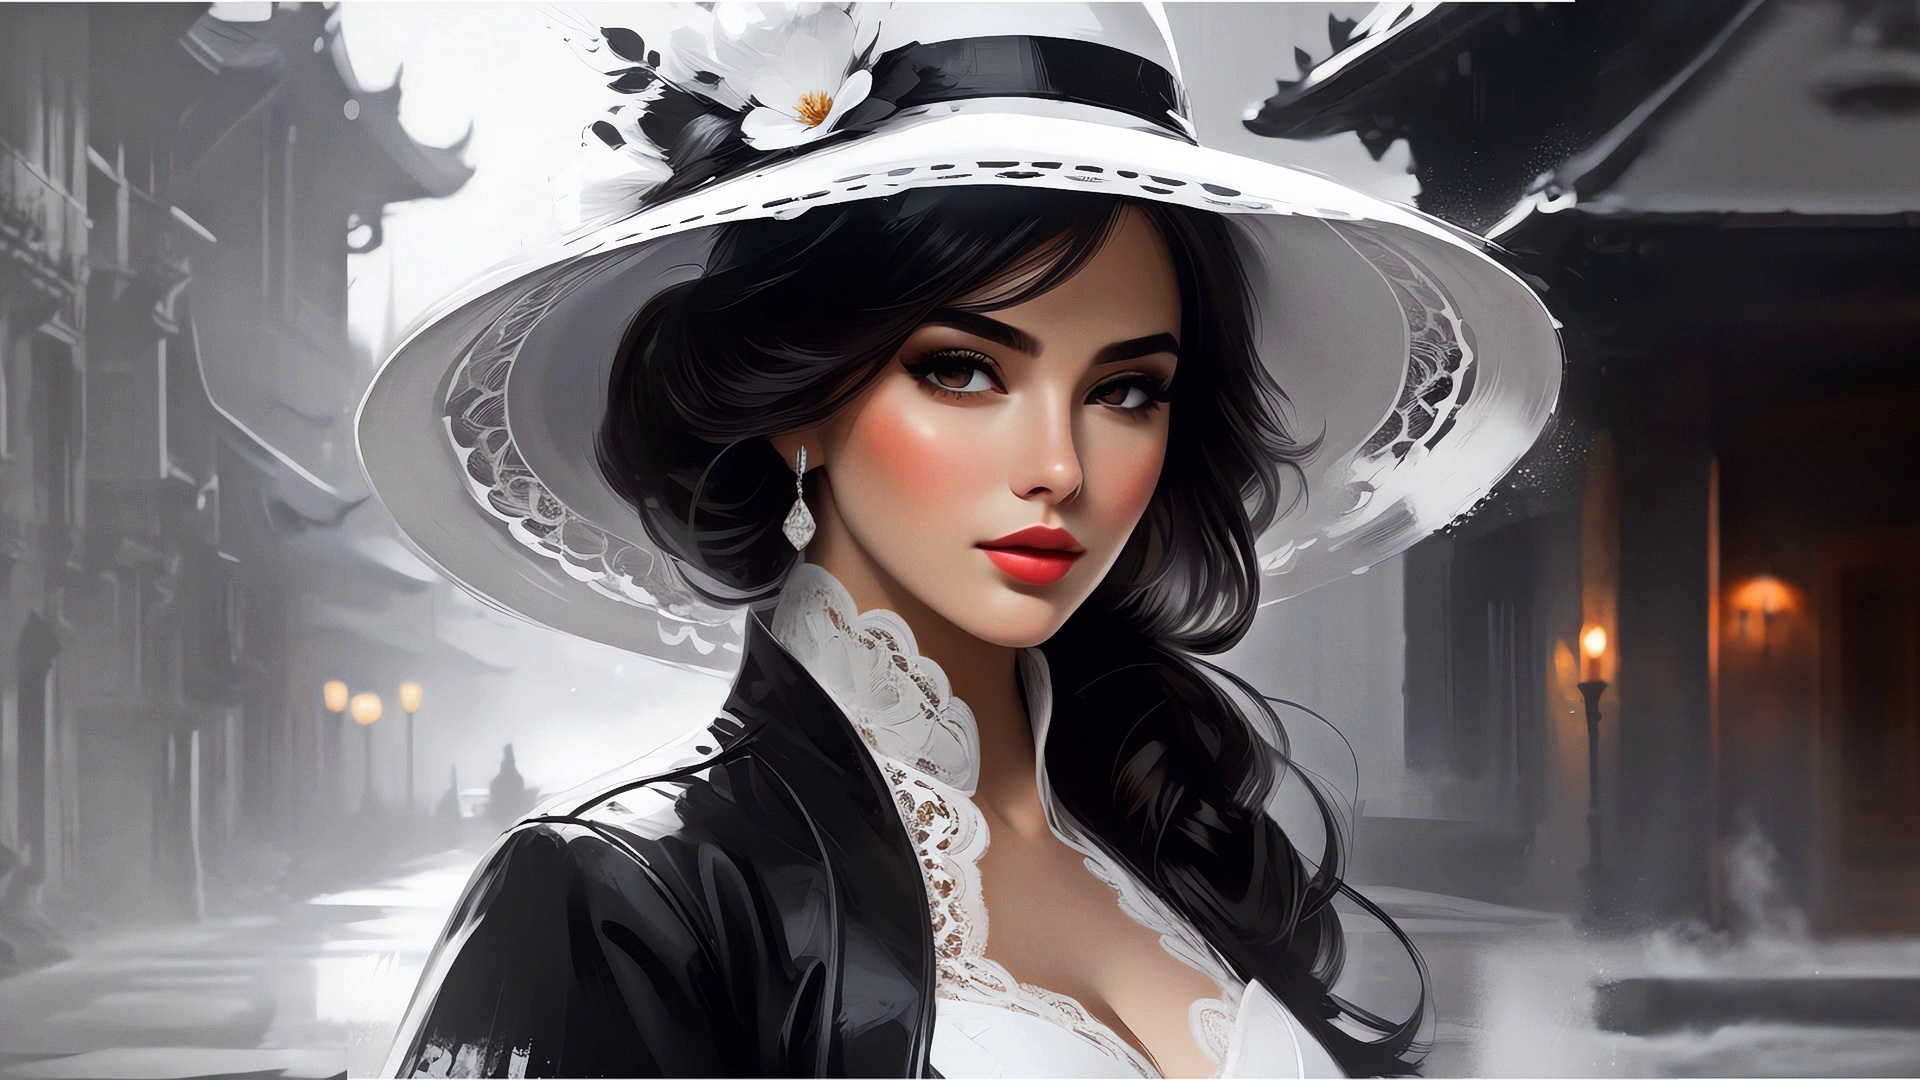 Бесплатное фото Портрет девушки в белой шляпе на улице старого города